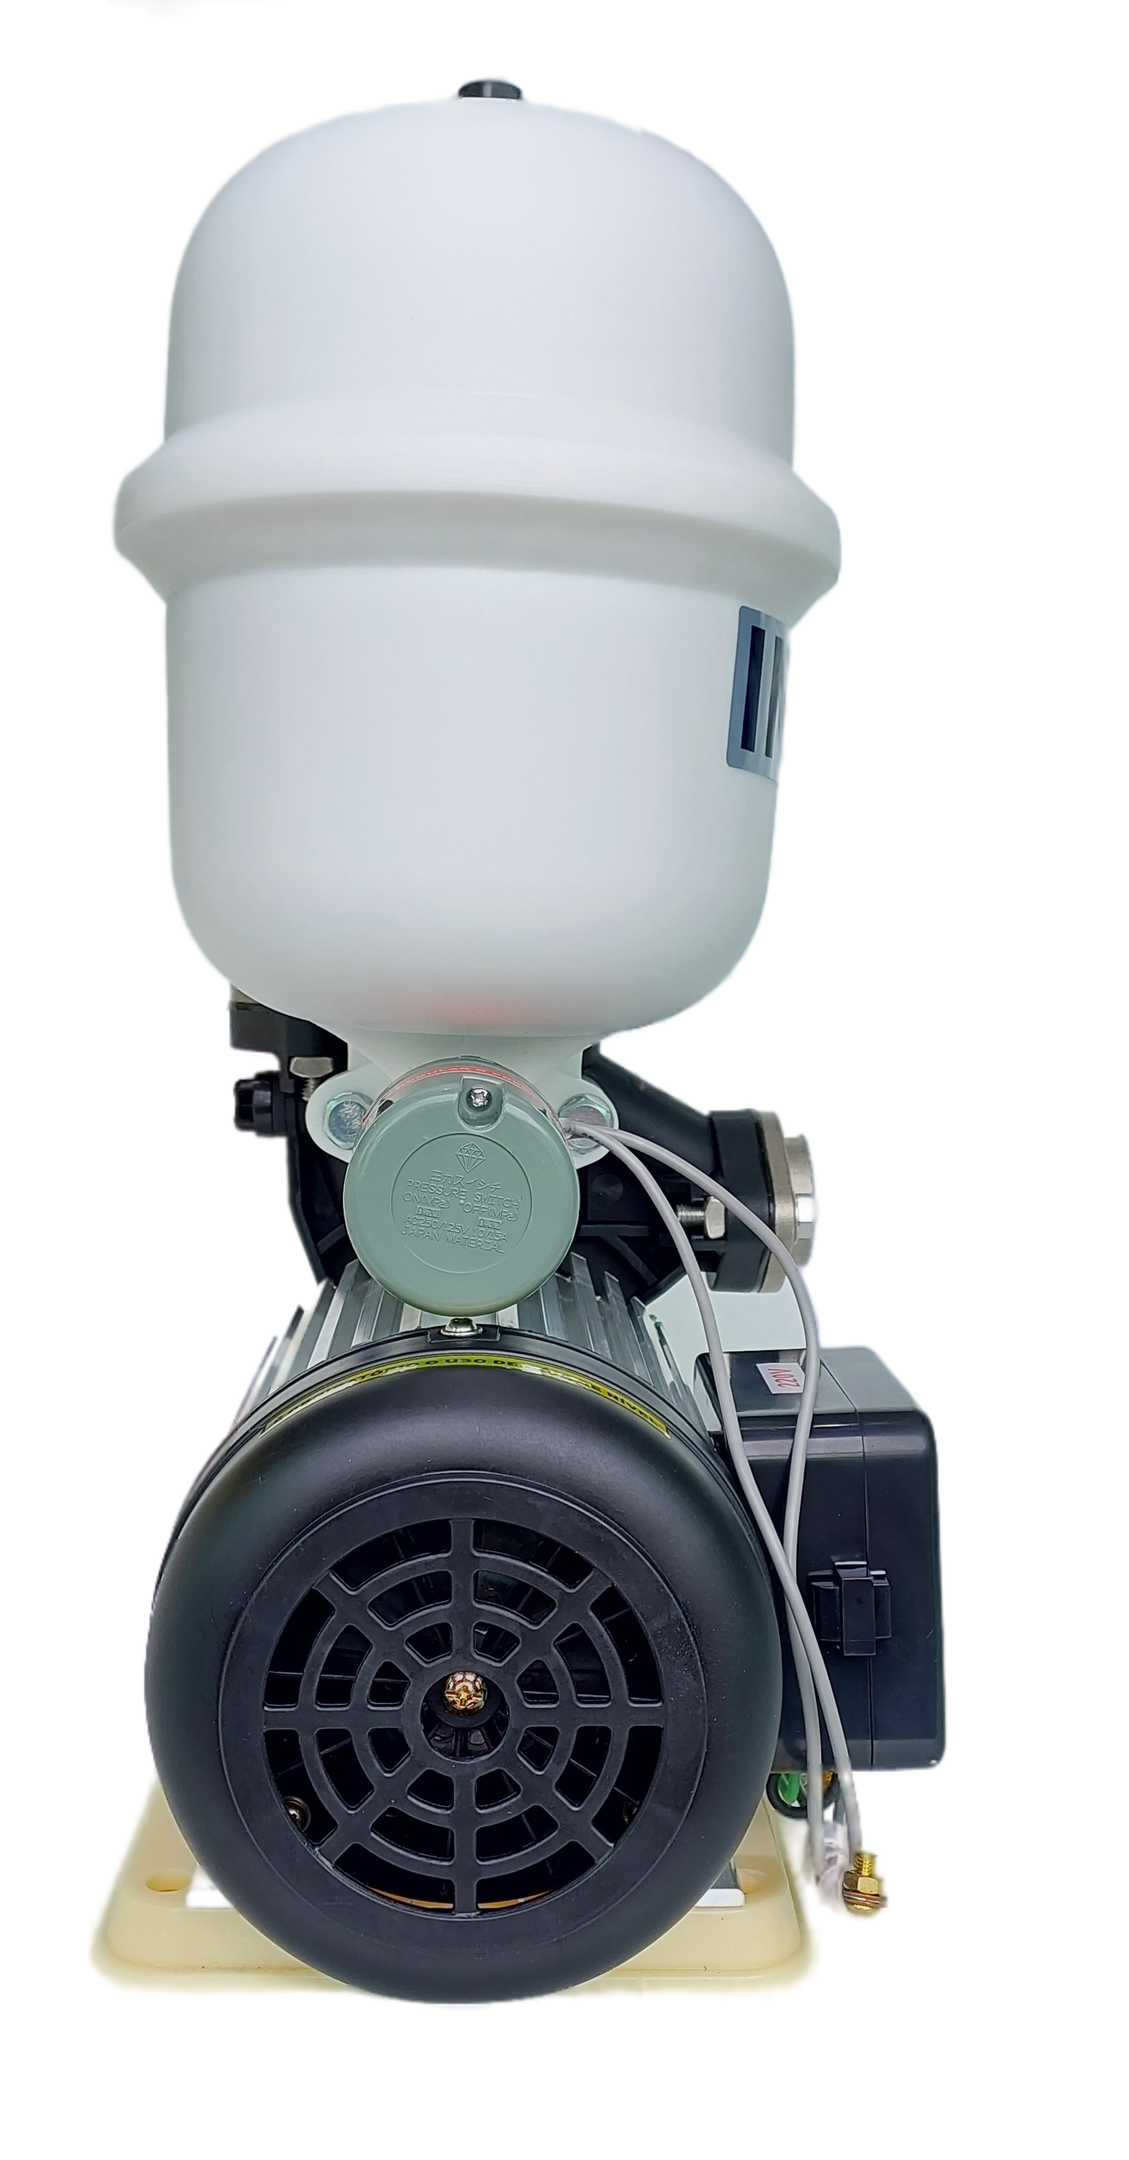 Pressurizador de Água Inova -gp 280 Ps -bivolt - Termoplástica de Alta Performance - com Pressostato - 5